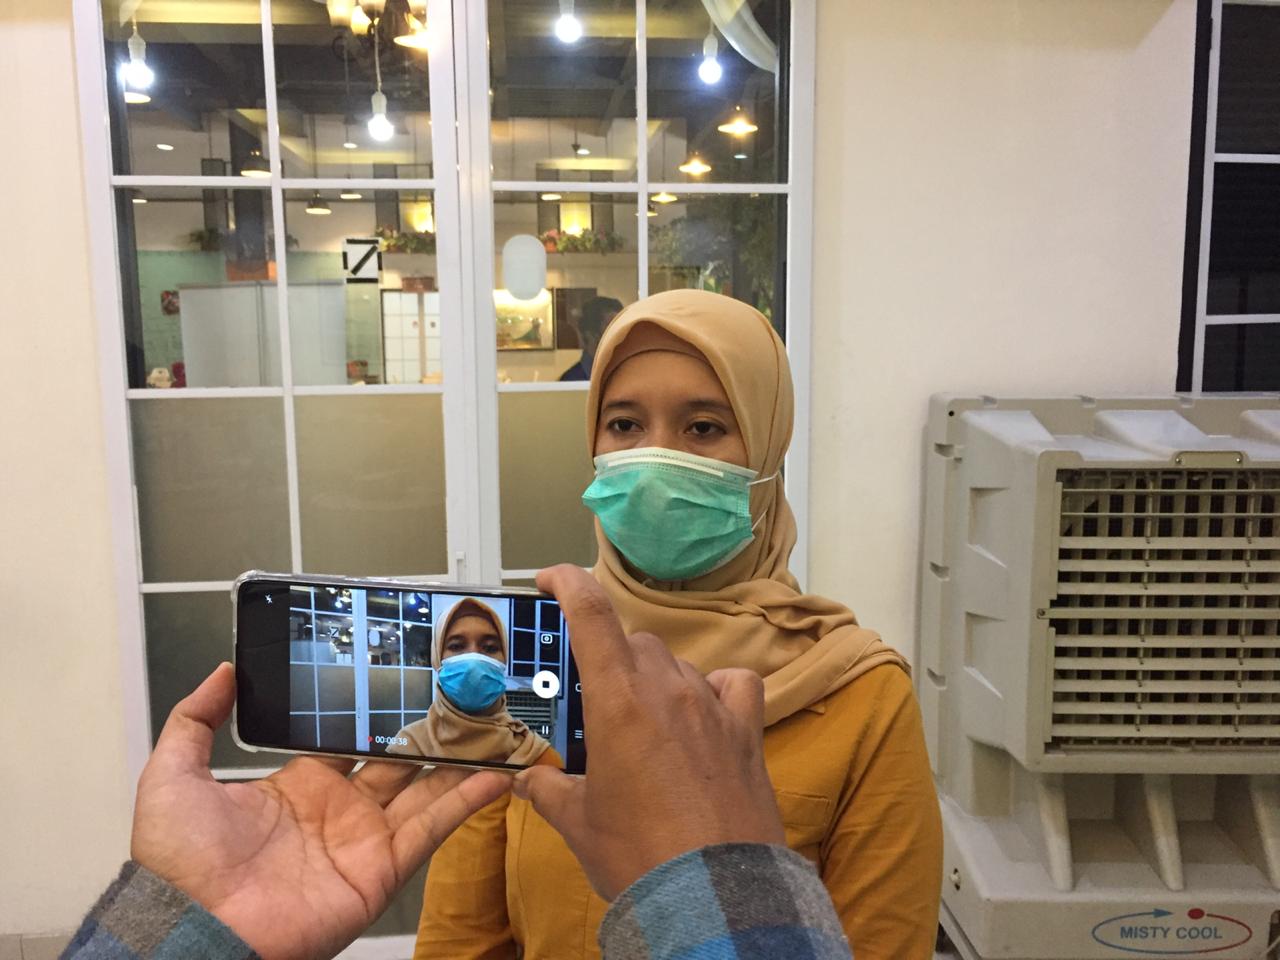 Kepala Bidang Kepesertaan dan Pelayanan Peserta BPJS Kesehatan Cabang Bekasi, Zuamah, saat kegiatan Ngopi bareng JKN bersama media di Bandar Djakarta, Jumat, (25/9).